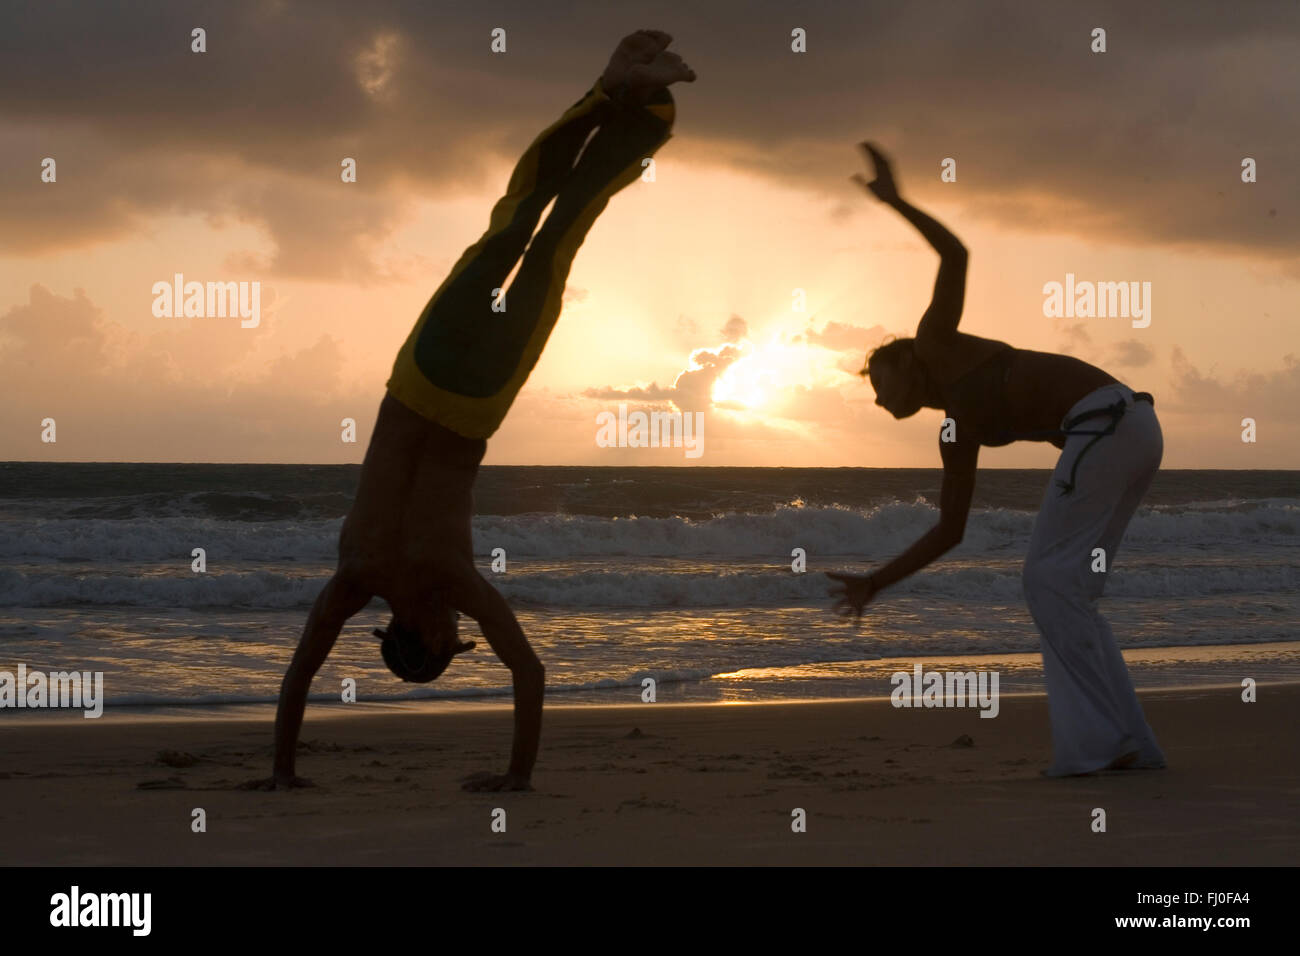 Capoeira, eine brasilianische Kampfkunst, die kombiniert Elemente aus Tanz, Akrobatik und Musik, und gekennzeichnet normalerweise als ein Spiel - bekannt für schnelle und komplexe bewegt, vor allem Kraft, Schnelligkeit und Hebel für eine Vielzahl von Tritte, Drehungen und hochmobile Techniken - am 26. November 2014 mit Capoeira erhielt einen besonderen Schutzstatus als "immaterielles Kulturerbe" von der UNESCO. Strand von Ponta Negra, Stadt Natal, Rio Grande Norte, Brasilien. Stockfoto